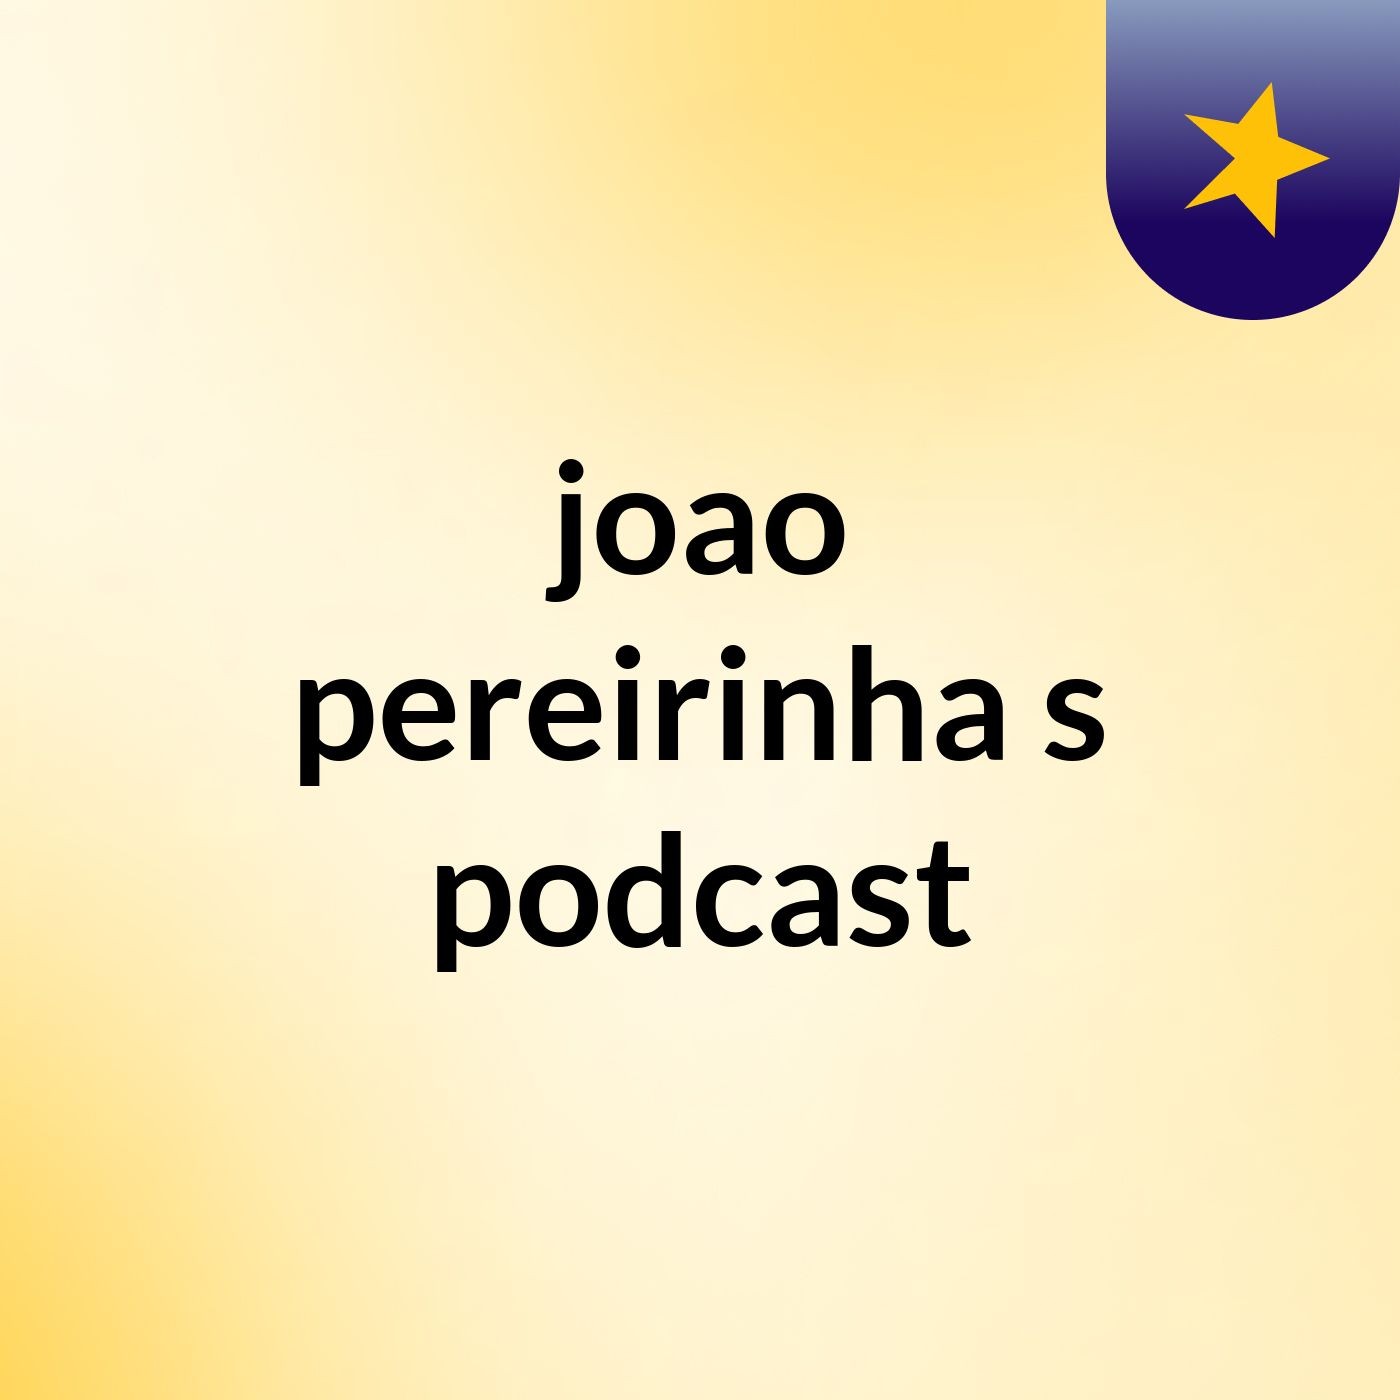 joao pereirinha's podcast